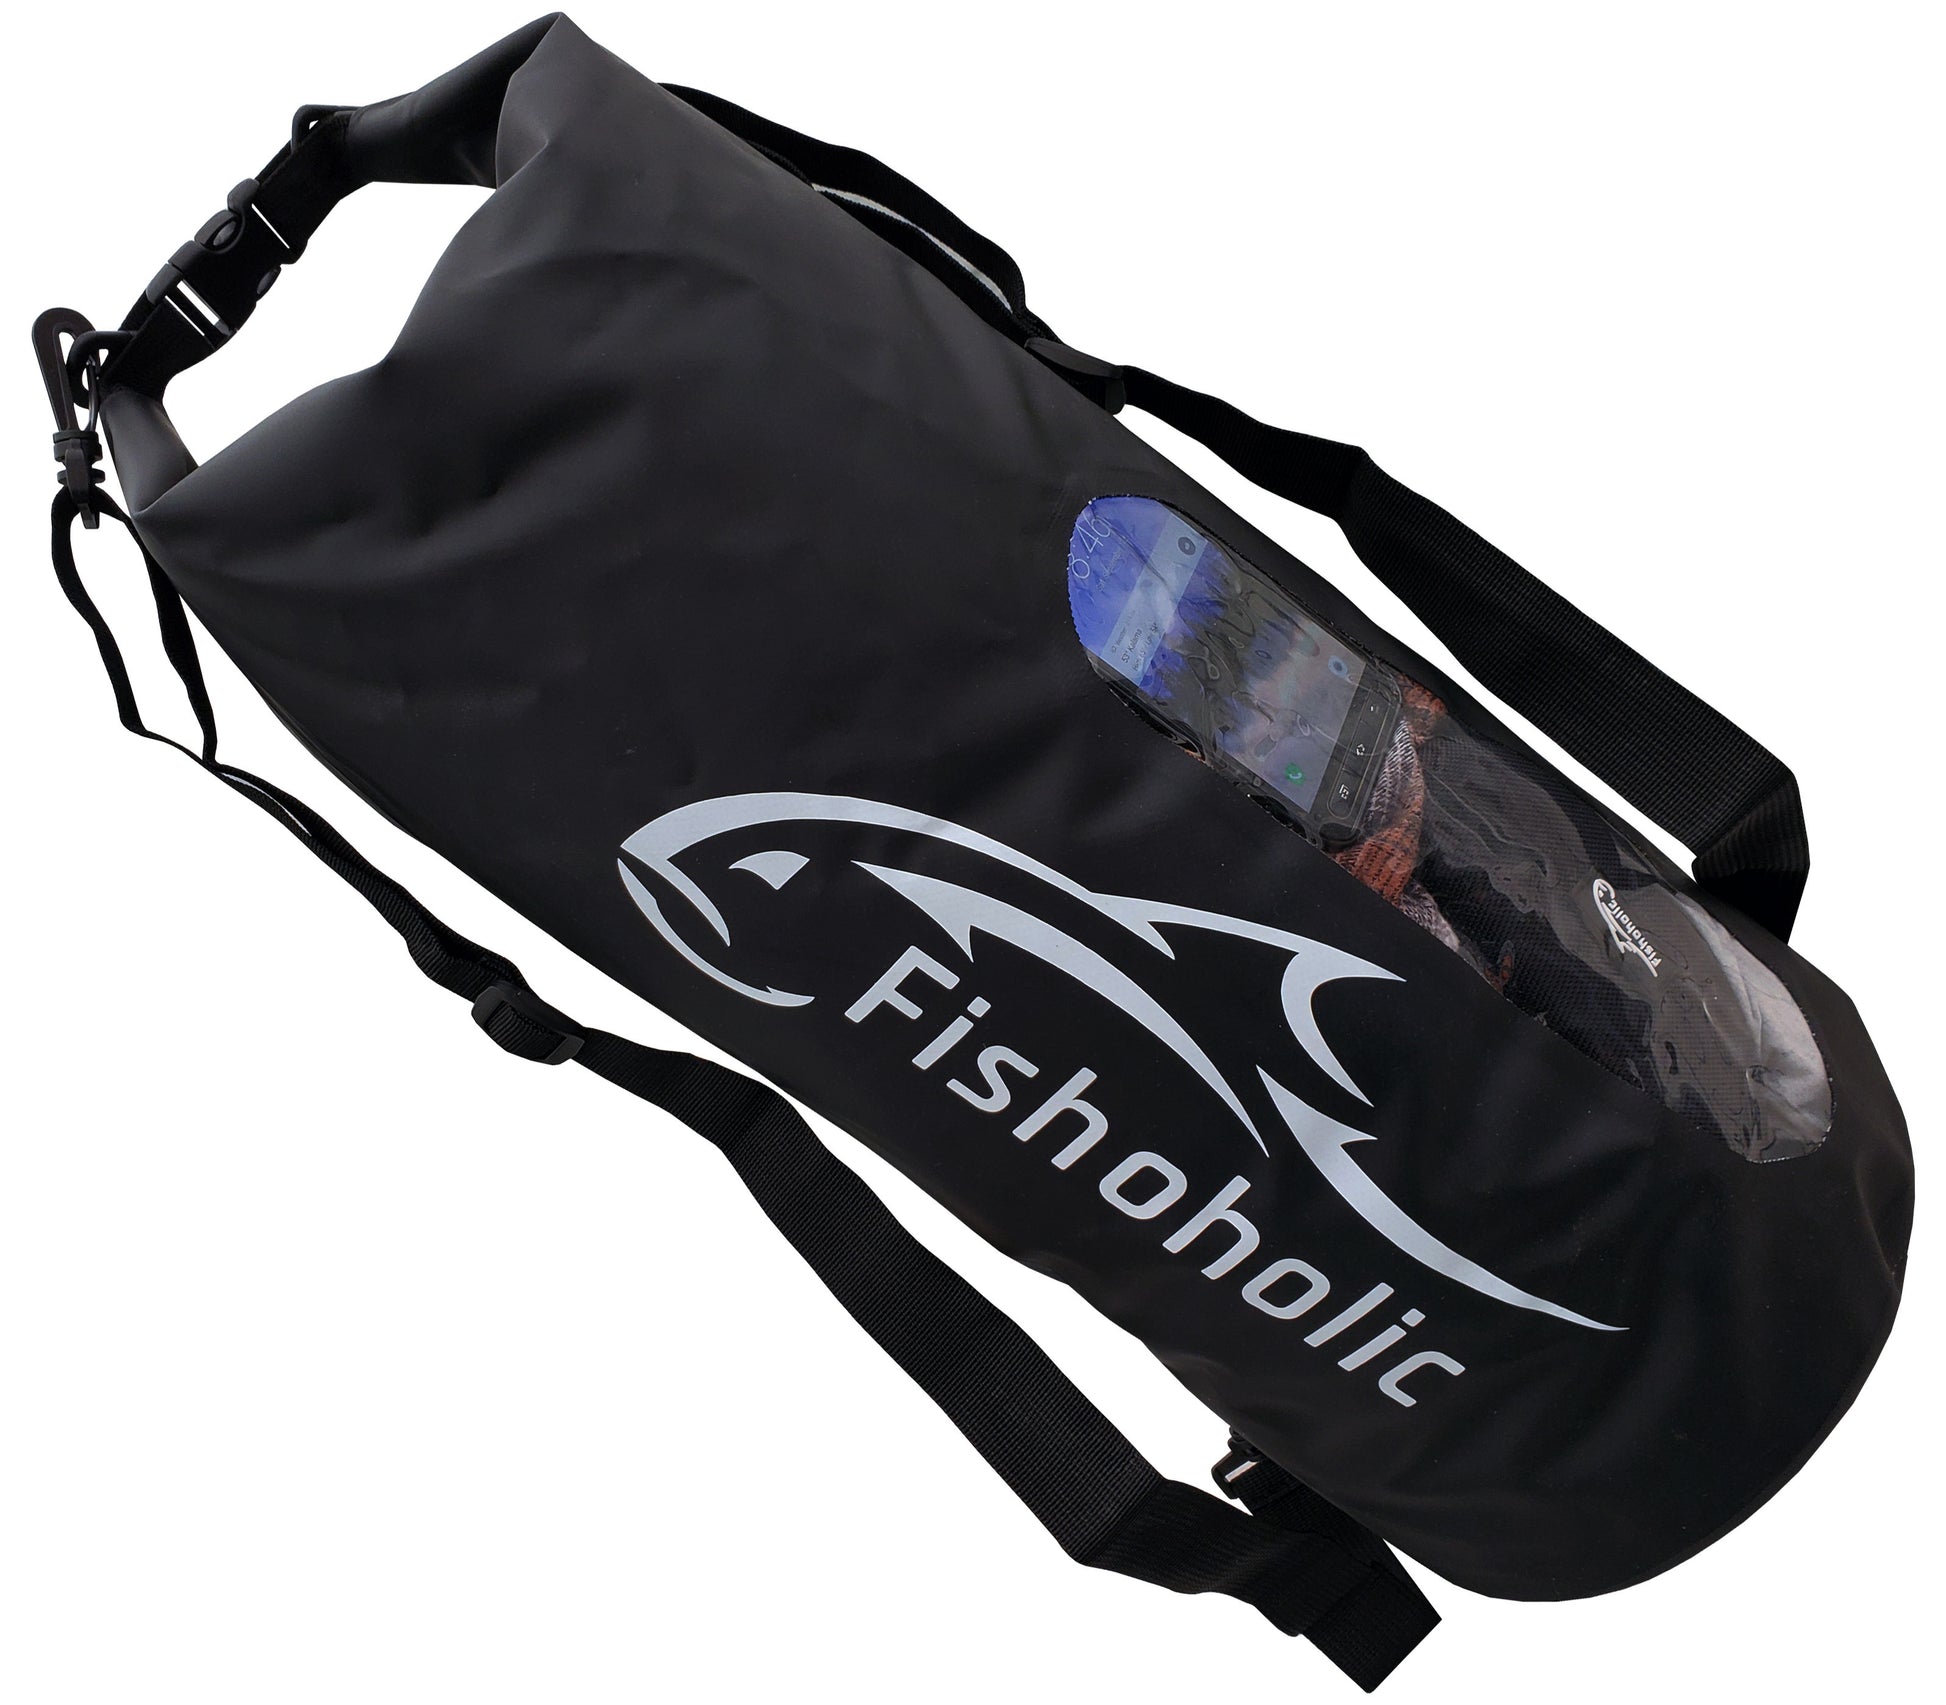 Fishoholic 2 pack Bundle - 5L & 30L Dry Bags - 2 Waterproof Gear Bags